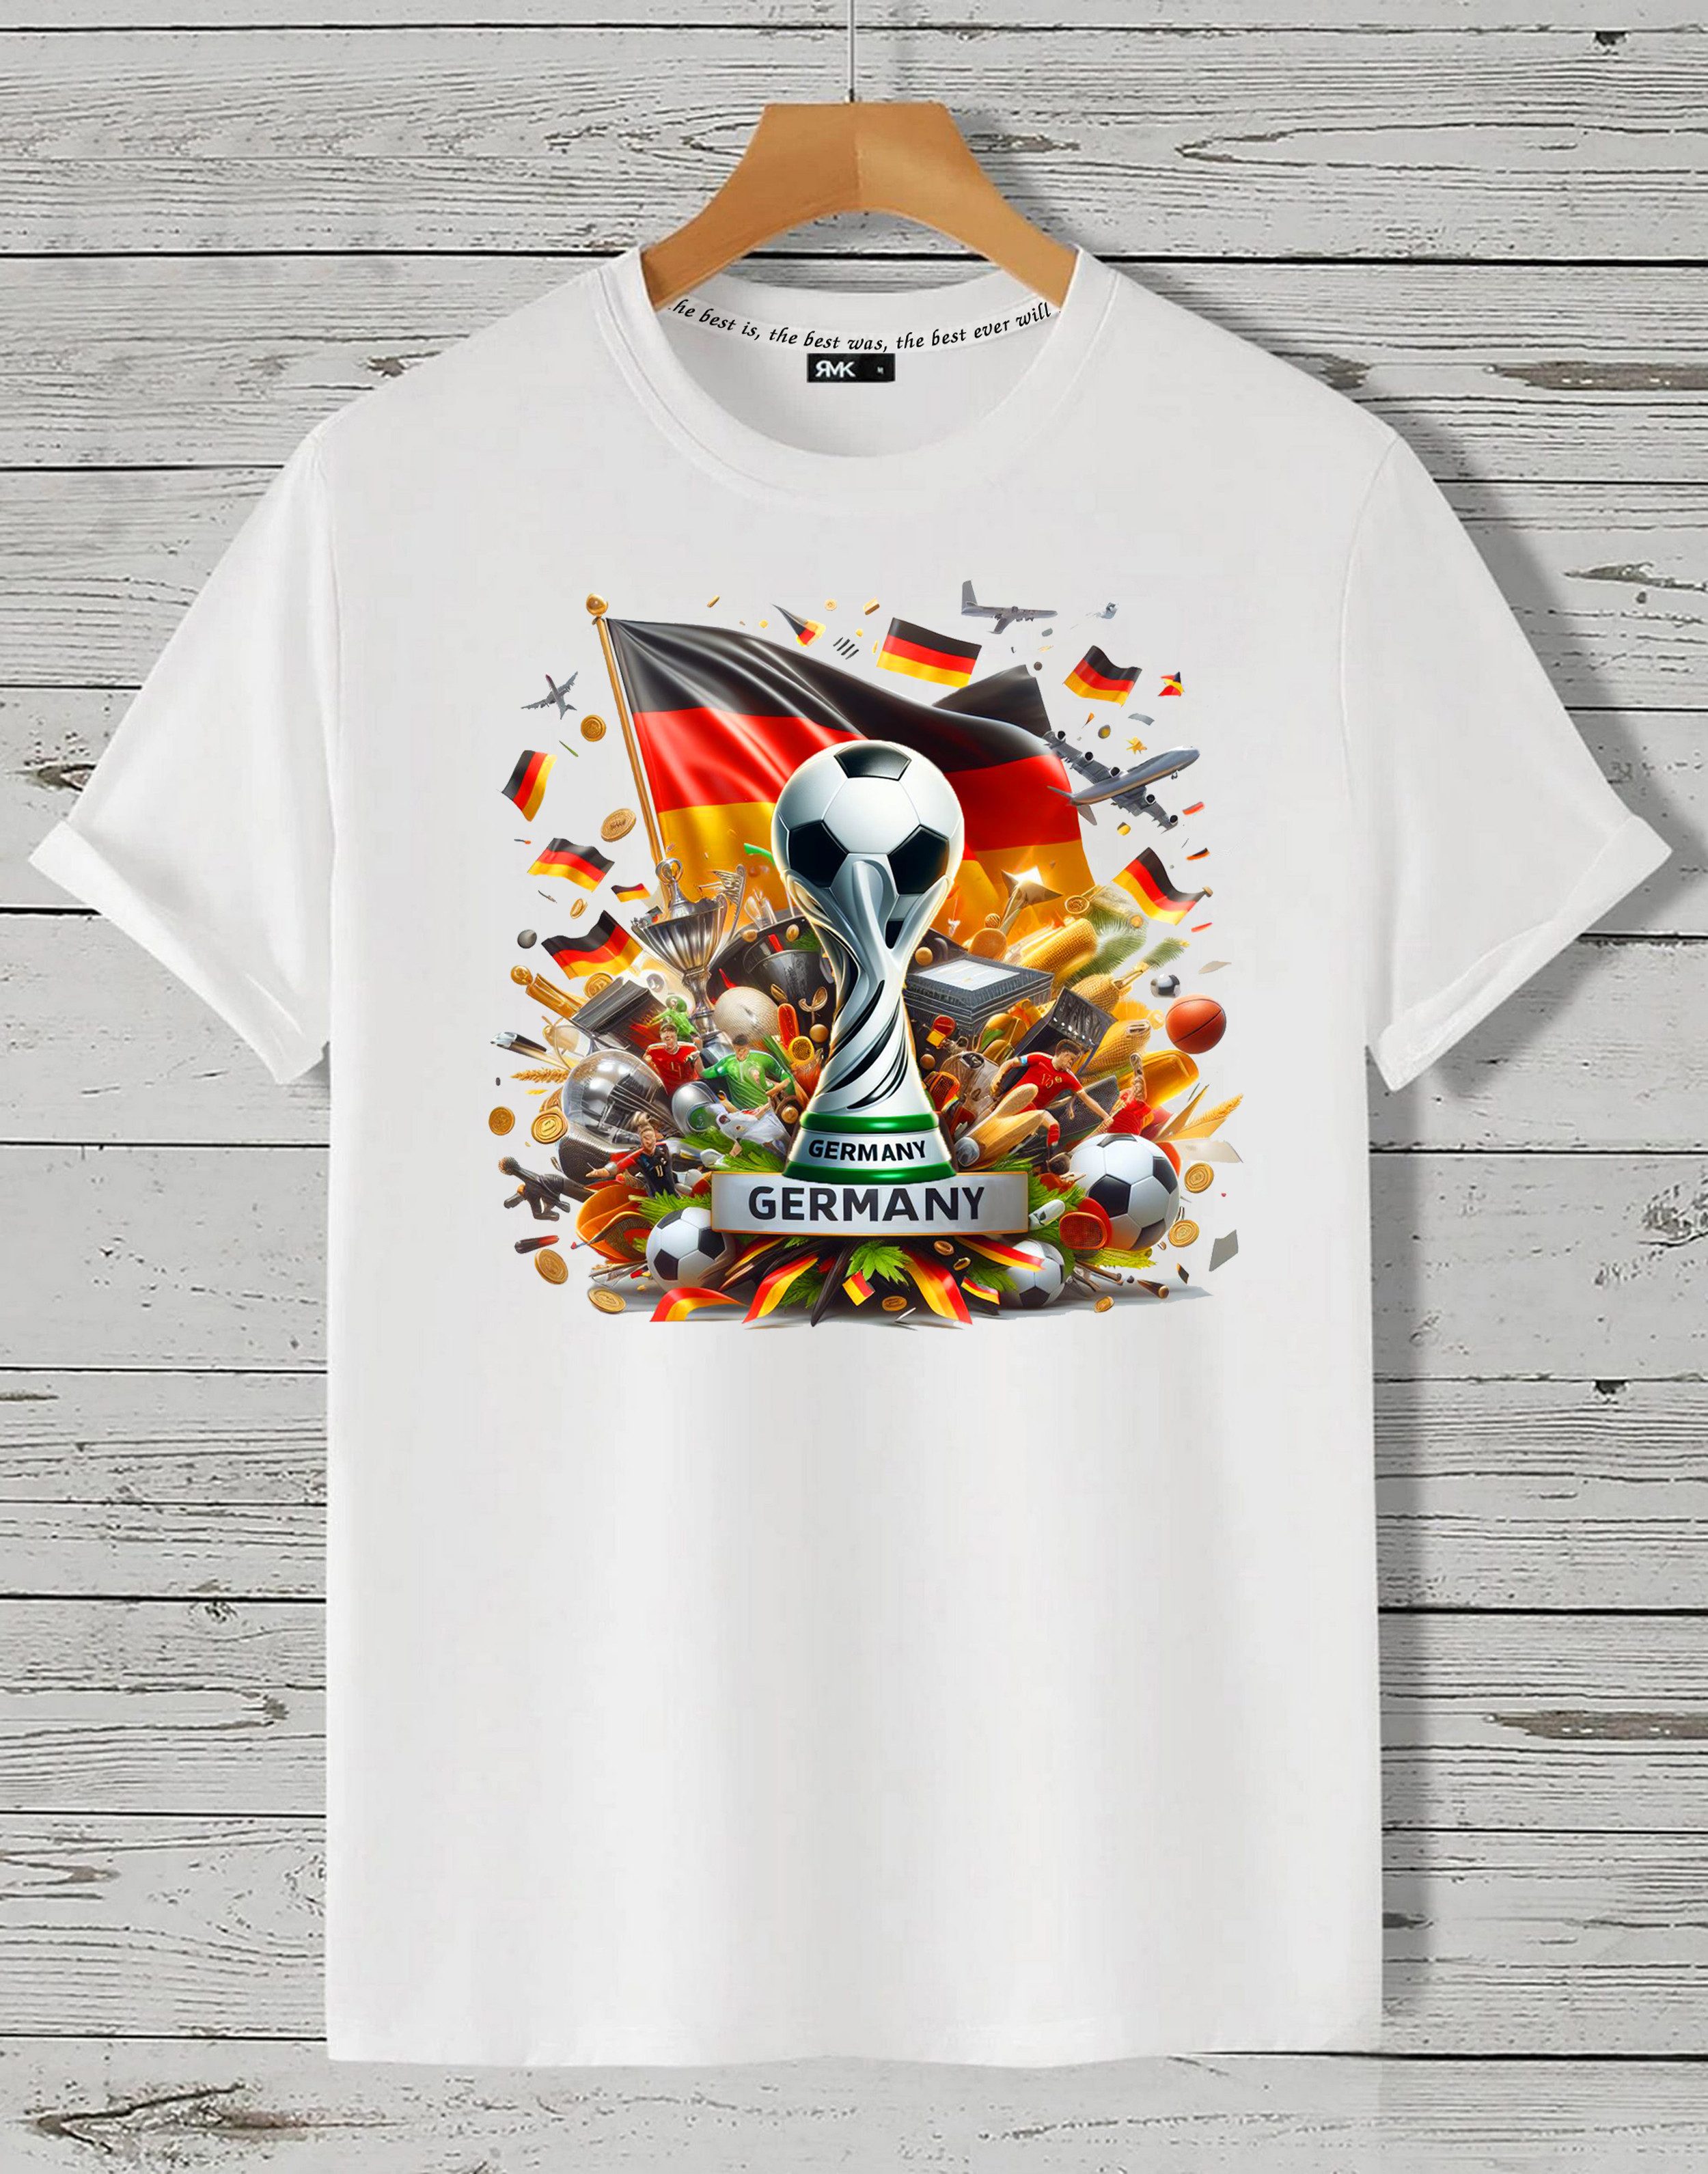 RMK T-Shirt Herren Shirt Trikot Fan Fußball Pokal Deutschland Germany EM WM aus Baumwolle